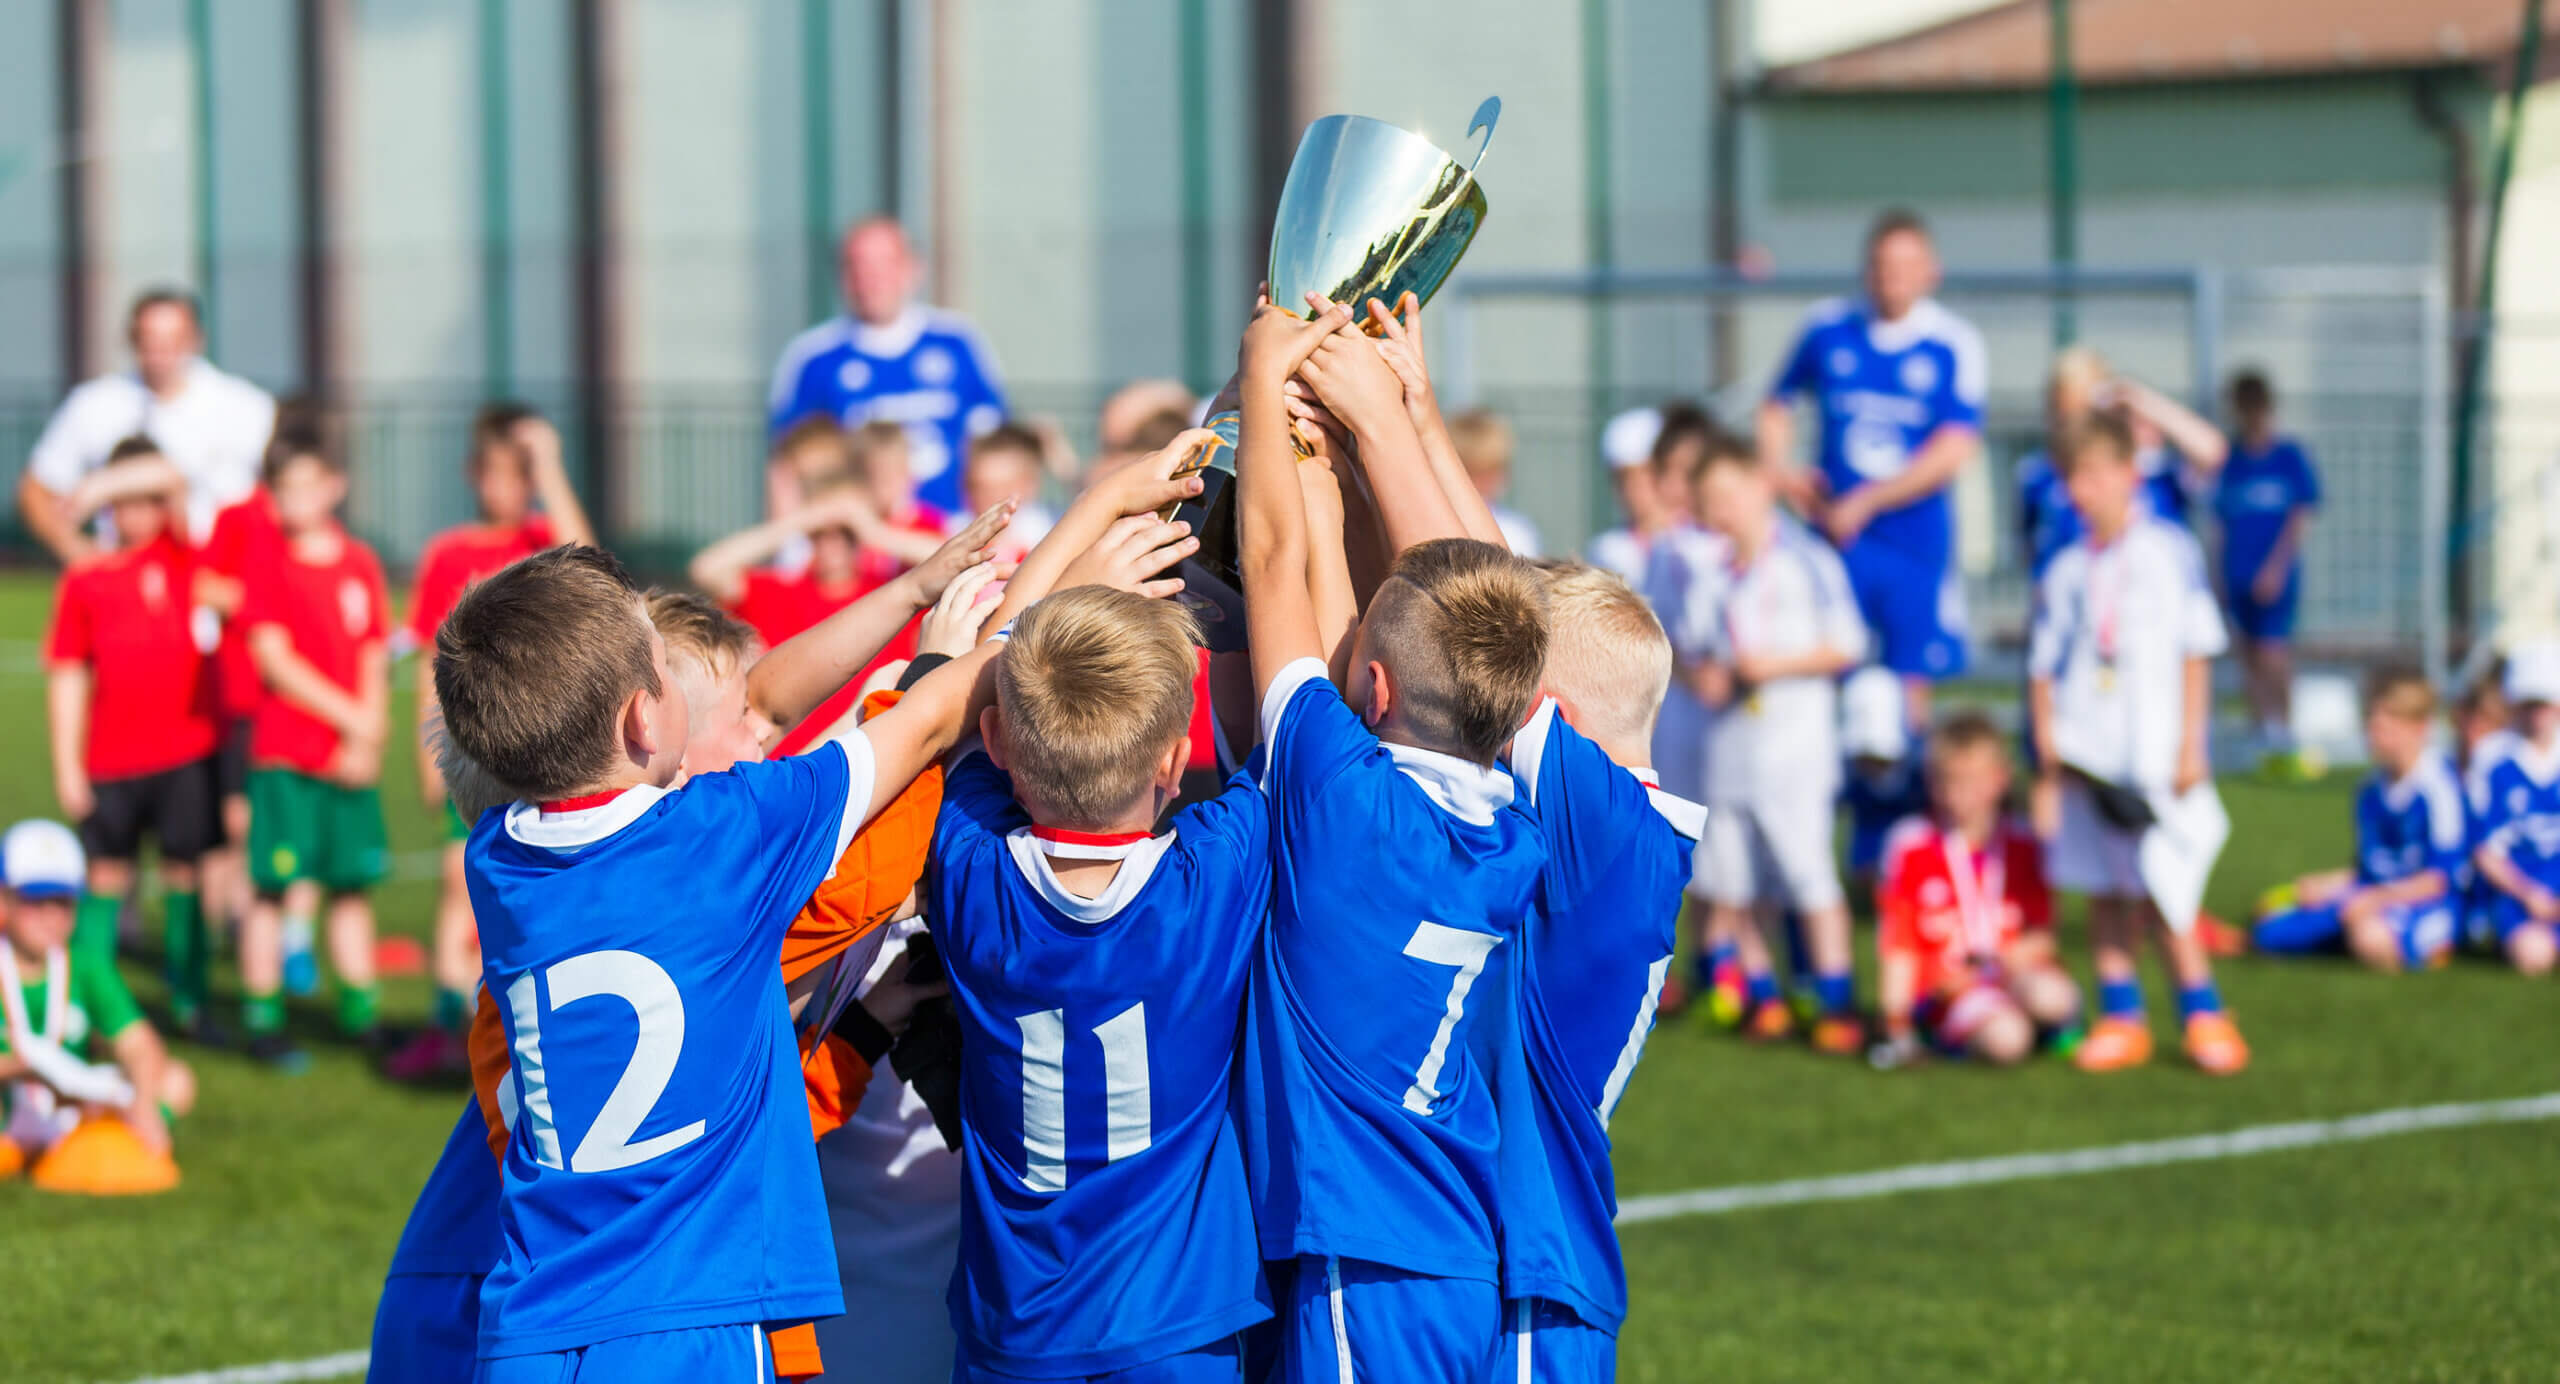 Equipo de fútbol levantando el trofeo tras ganar con deportividad.